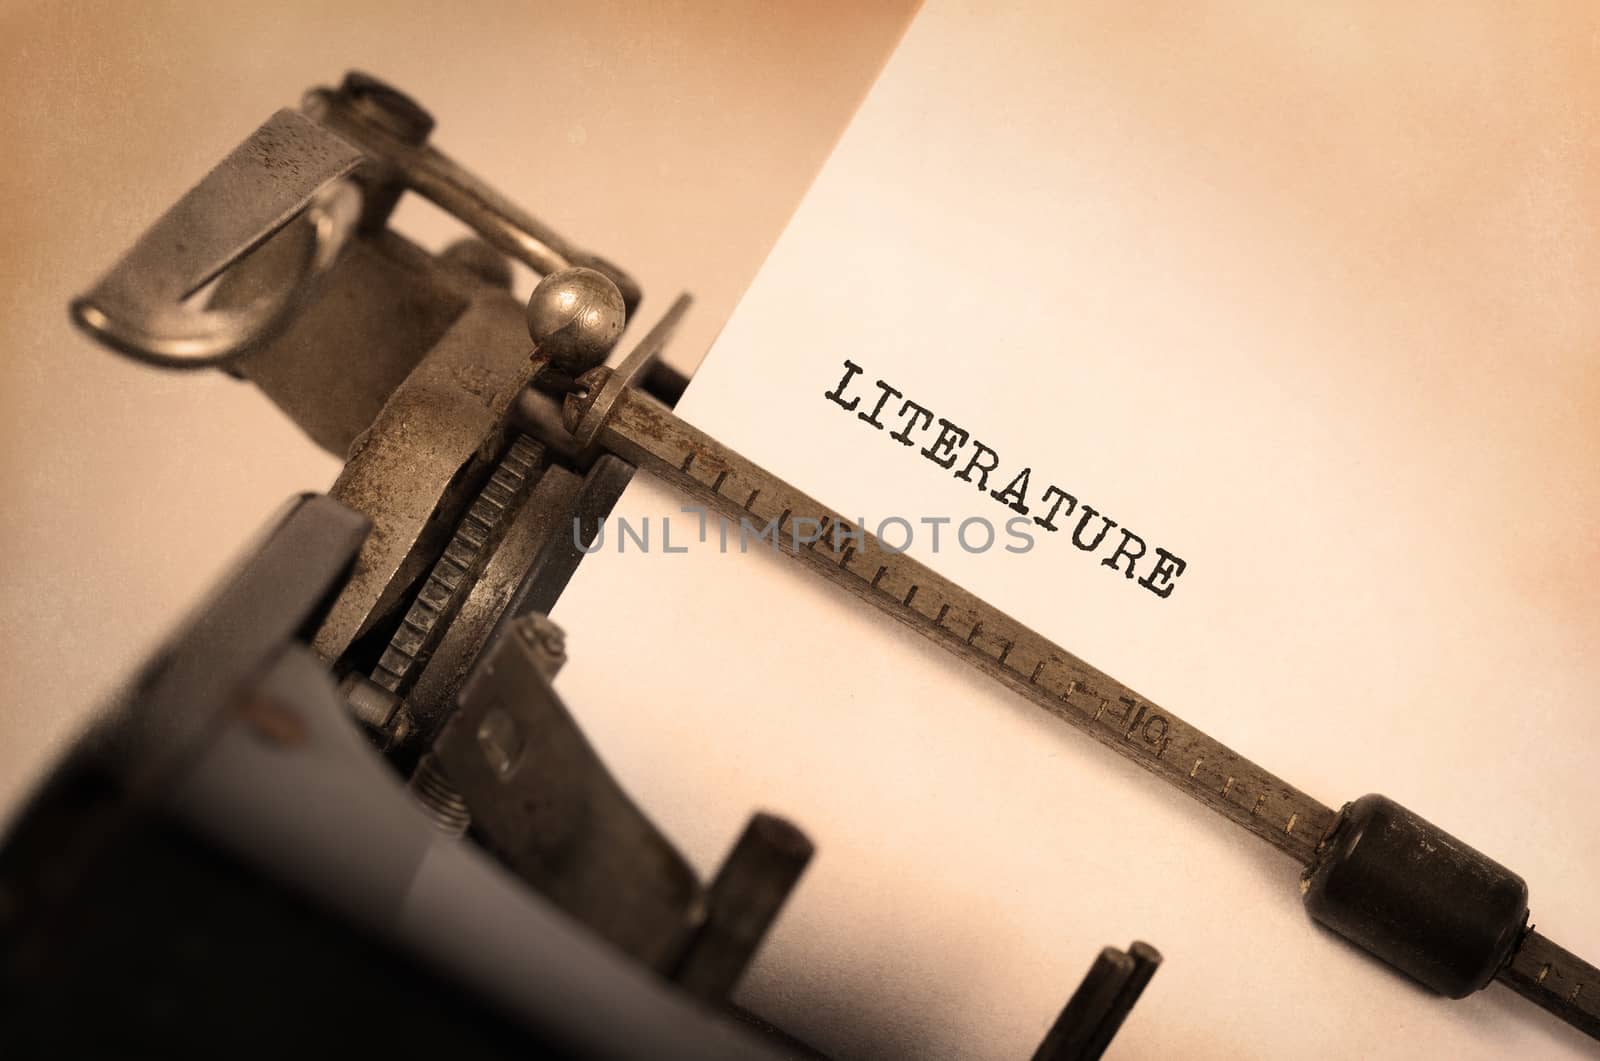 Vintage typewriter by michaklootwijk